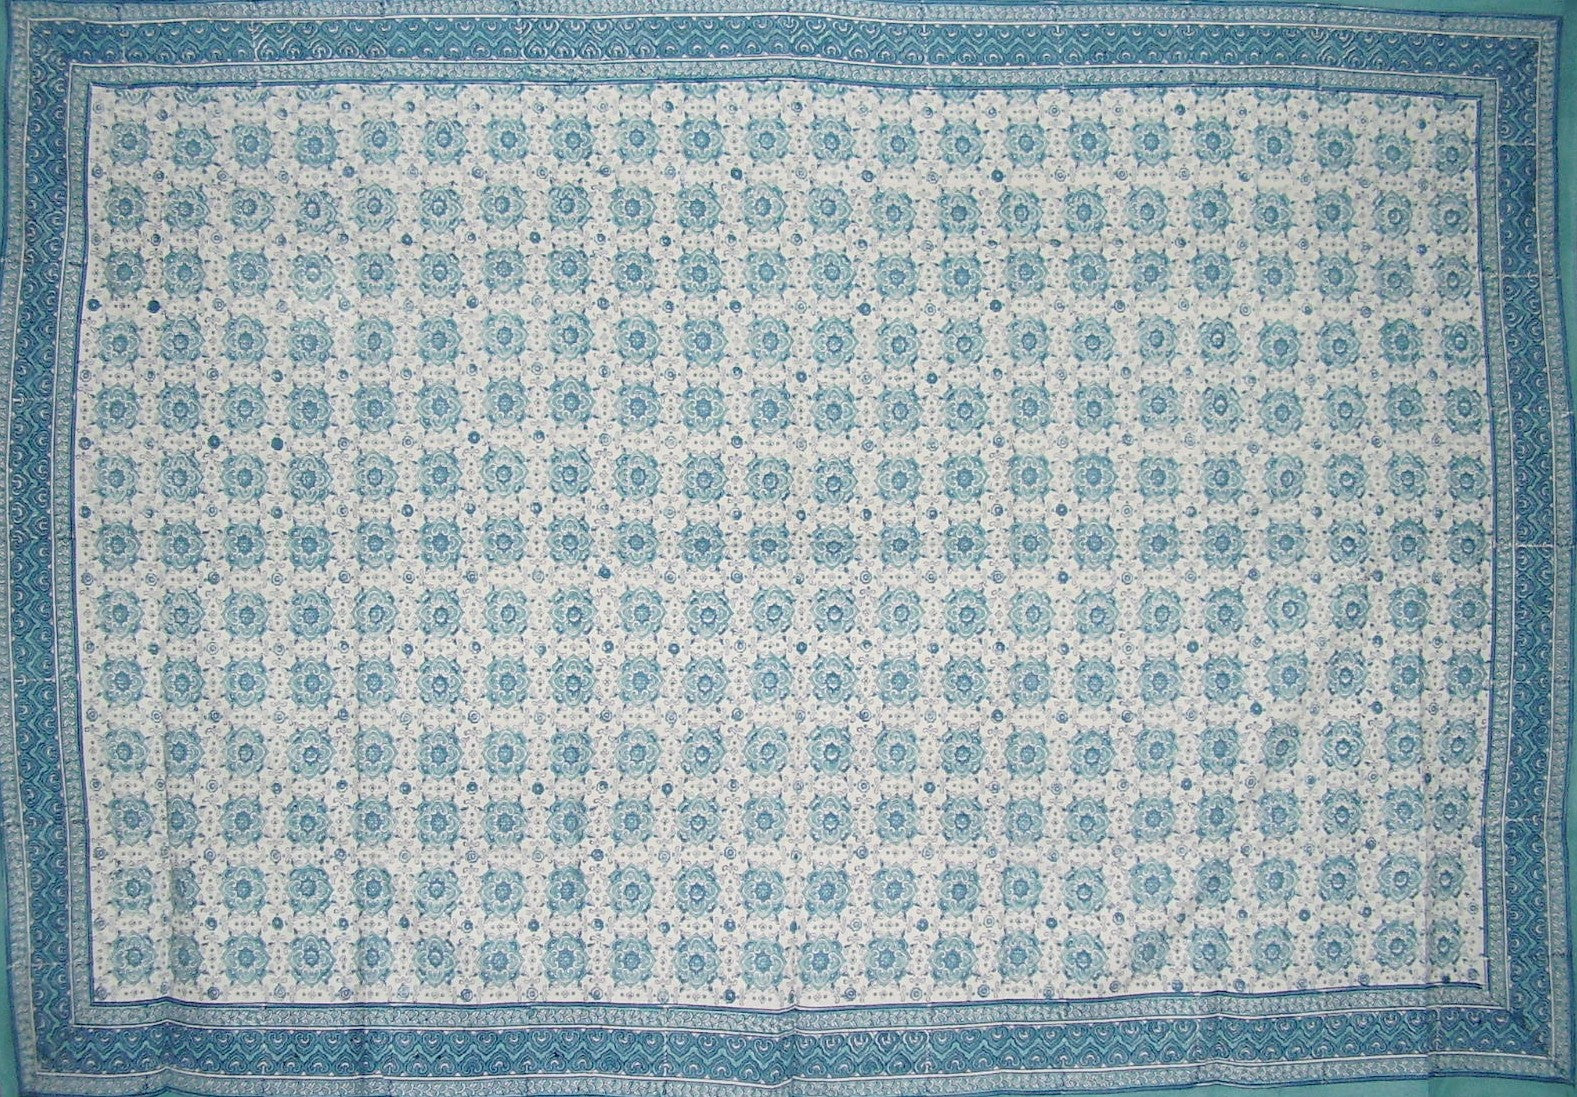 Τραπεζομάντιλο Tile Block Print Βαμβακερό 86" x 60" Μπλε